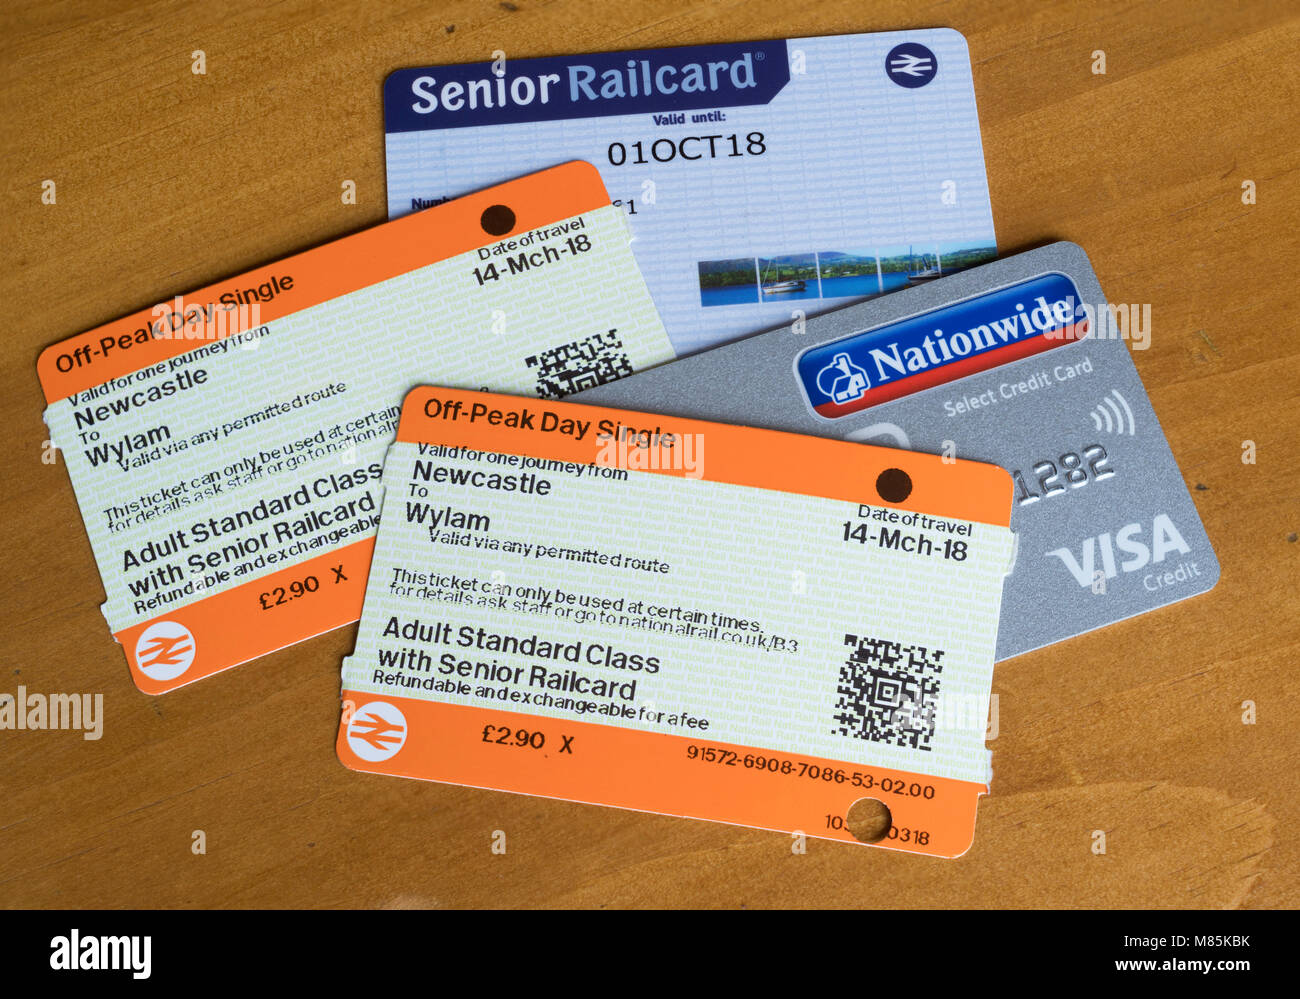 Comprar billetes de tren con un alto Railcard y un concepto de tarjeta de crédito. Foto de stock